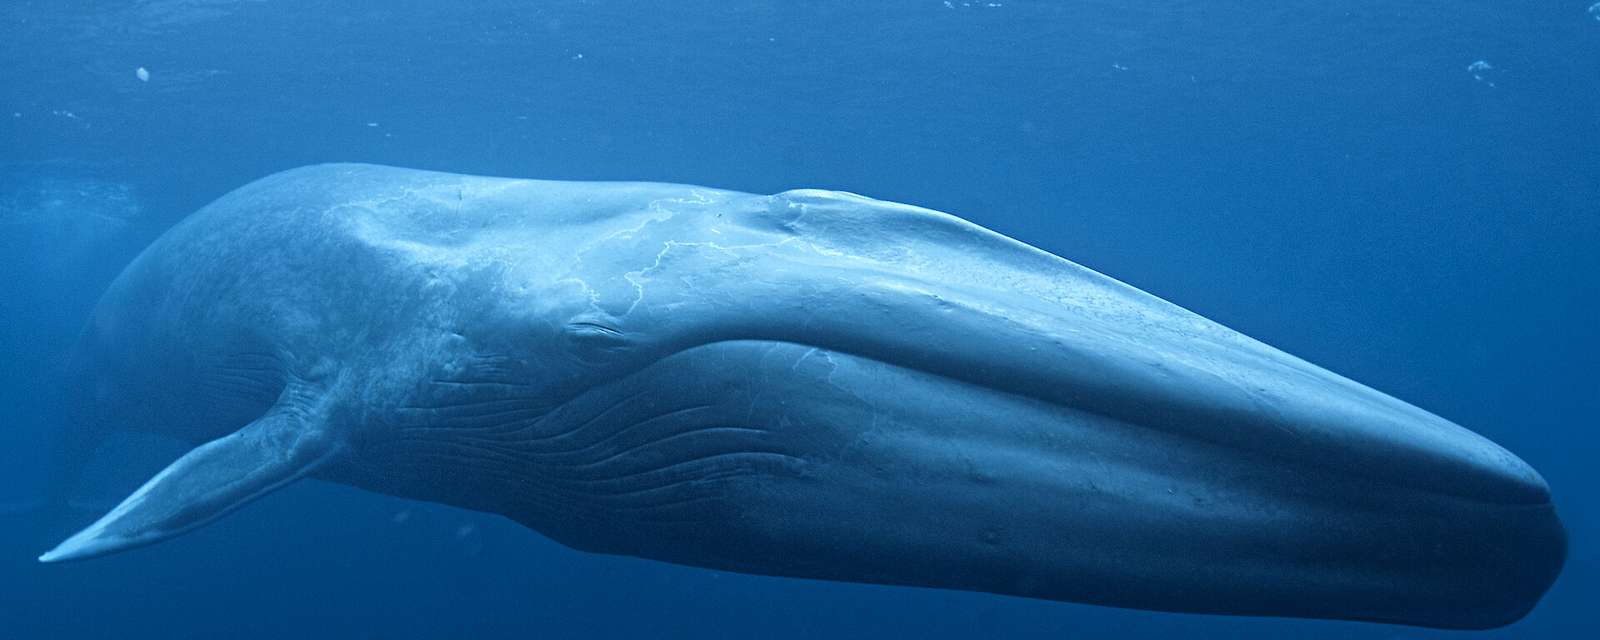 kék bálna puzzle online fotóról